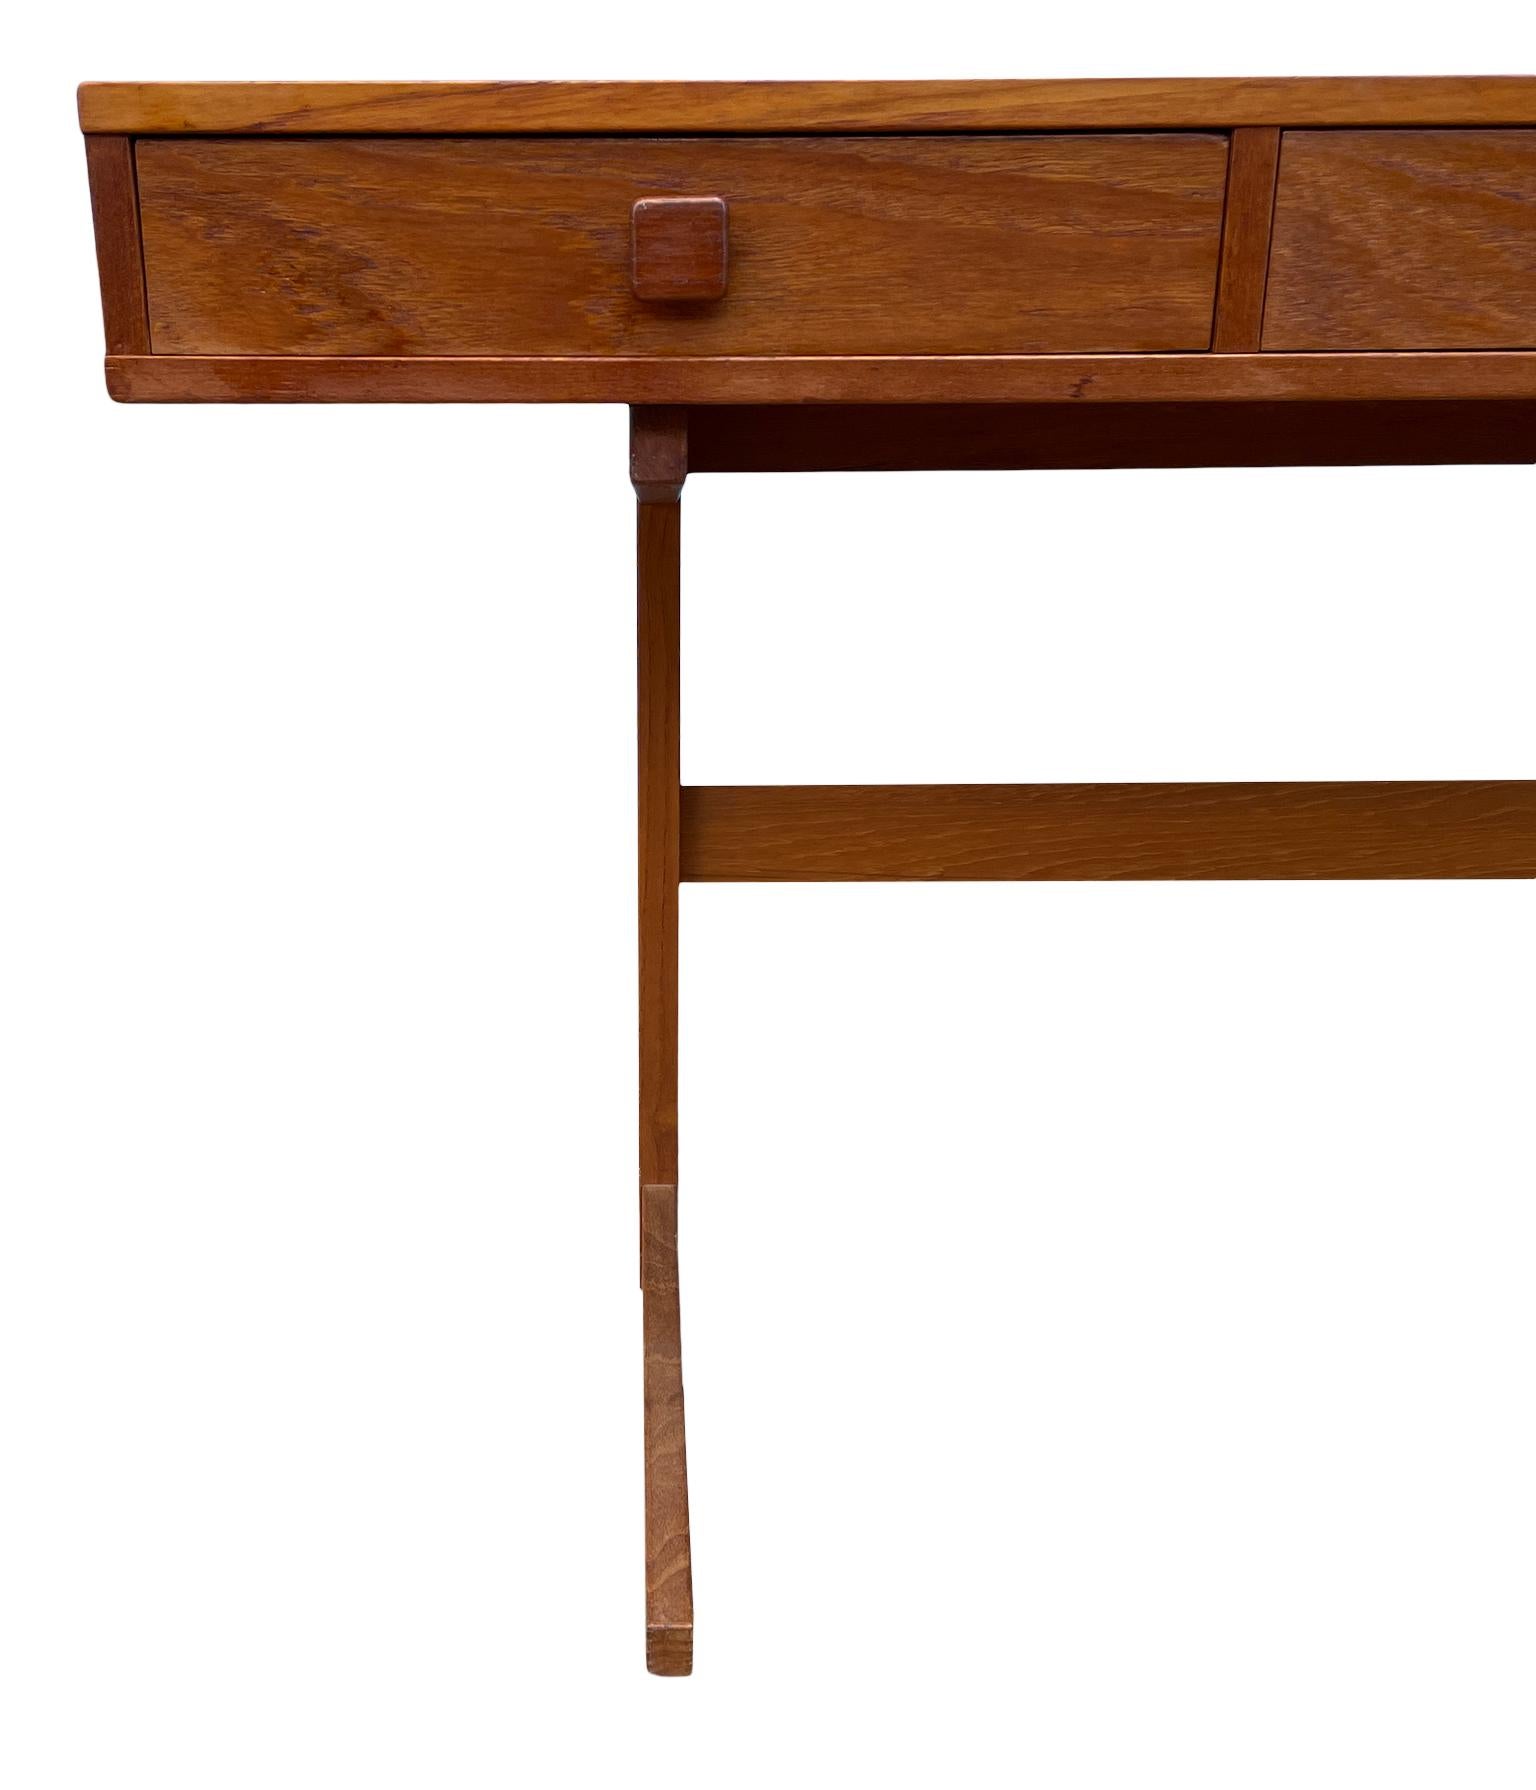 Woodwork Midcentury Danish Modern teak Desk by Georg Petersens 3 drawer